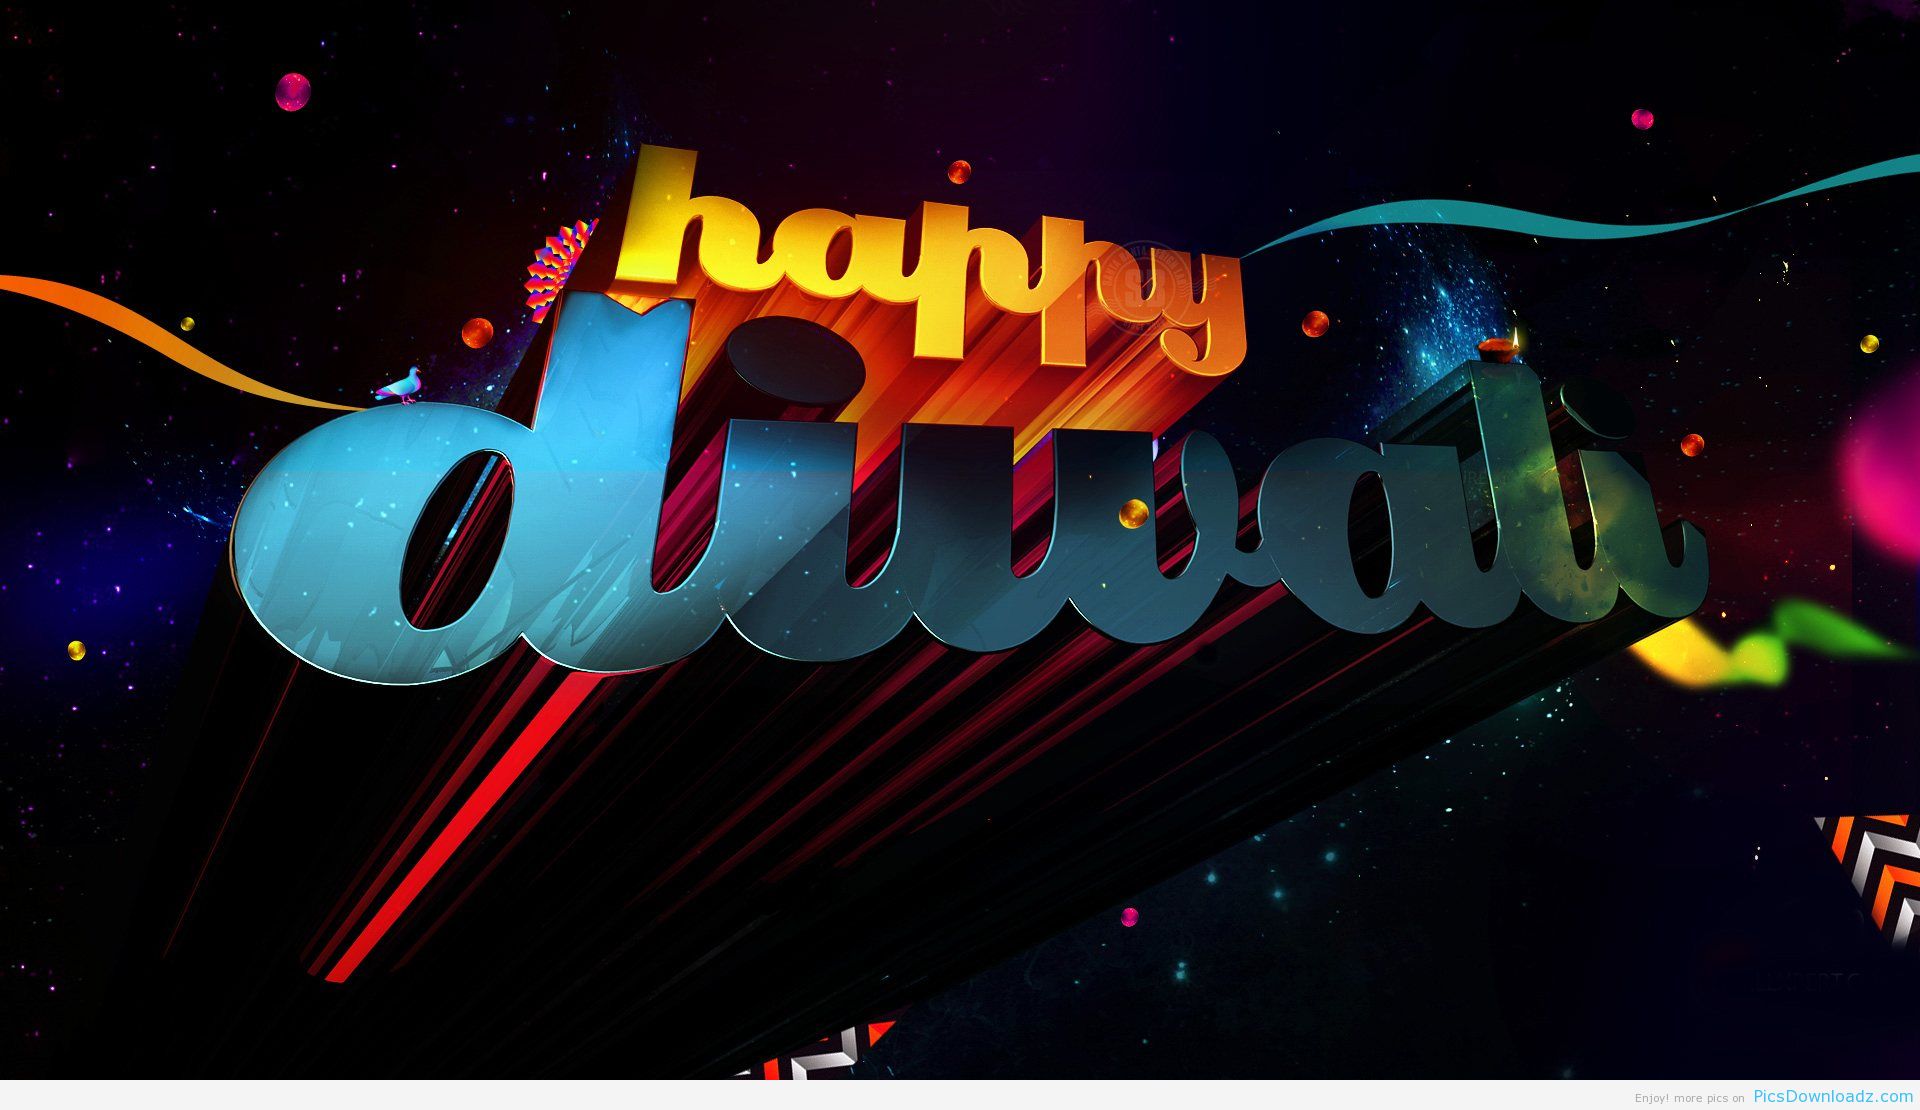 In Happy Diwali Beautiful HD Logo Wallpaper For Desktop